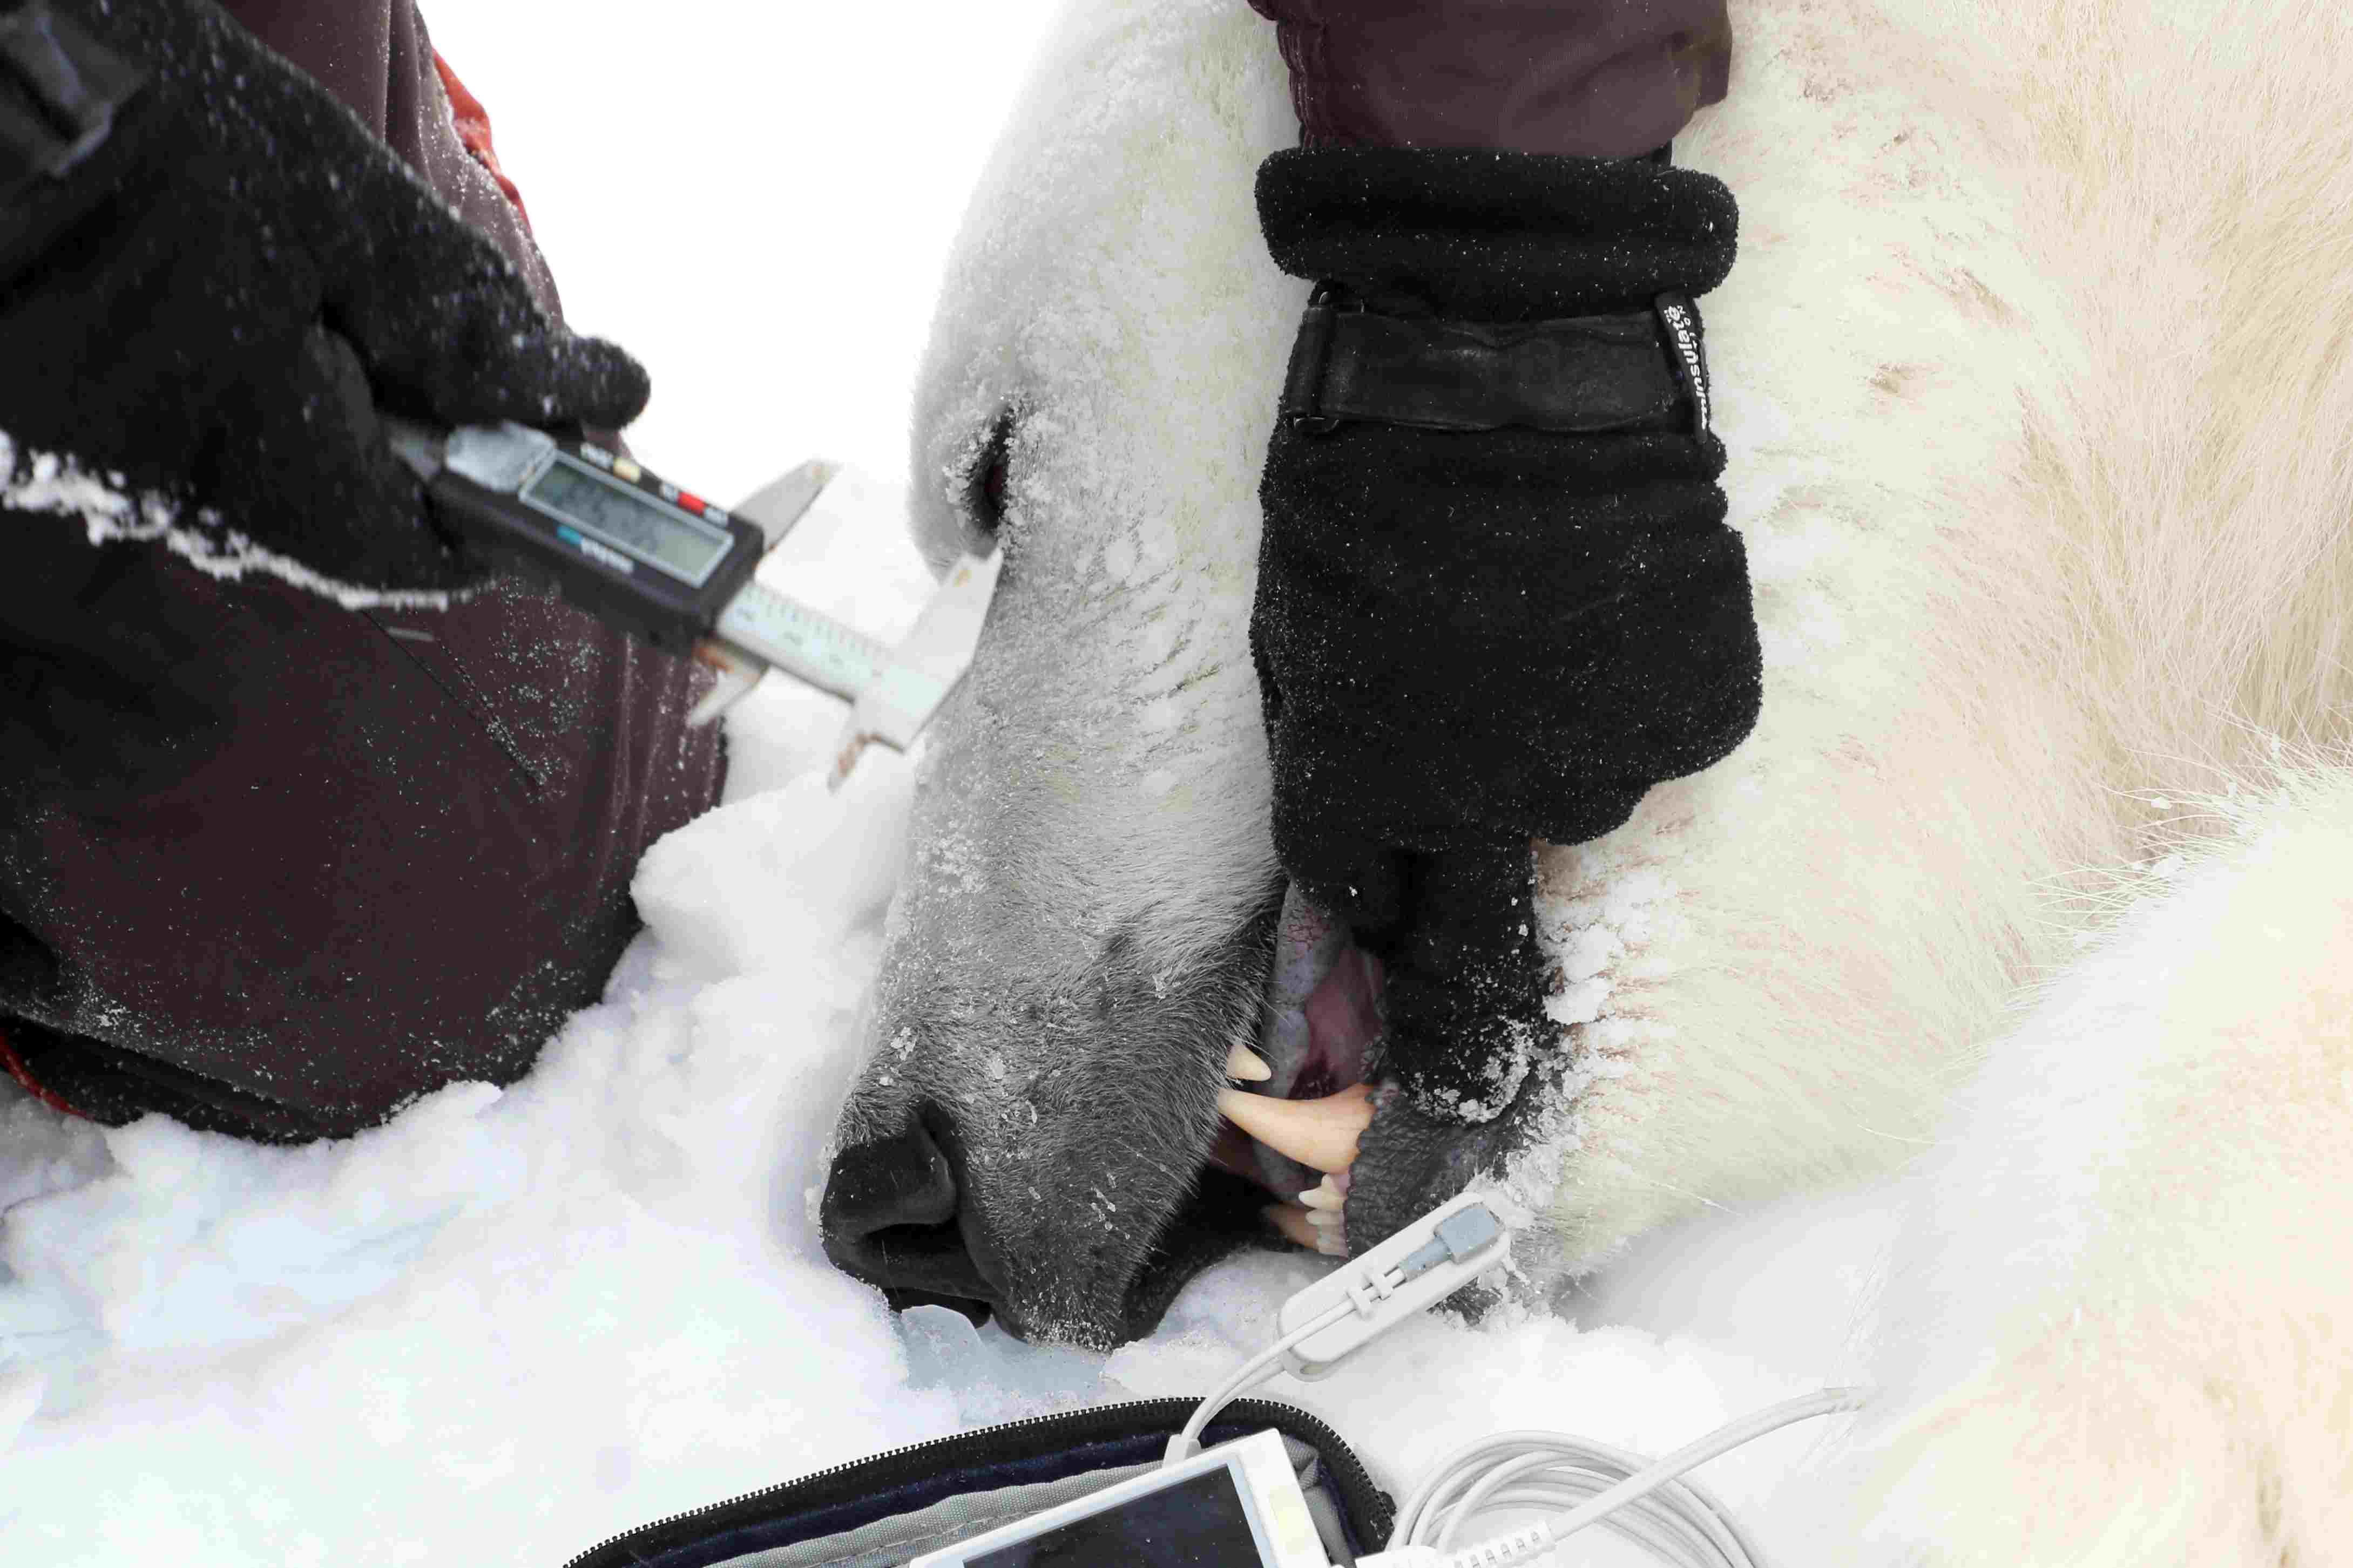 俄罗斯北极考察持续 北极熊被麻醉做检查